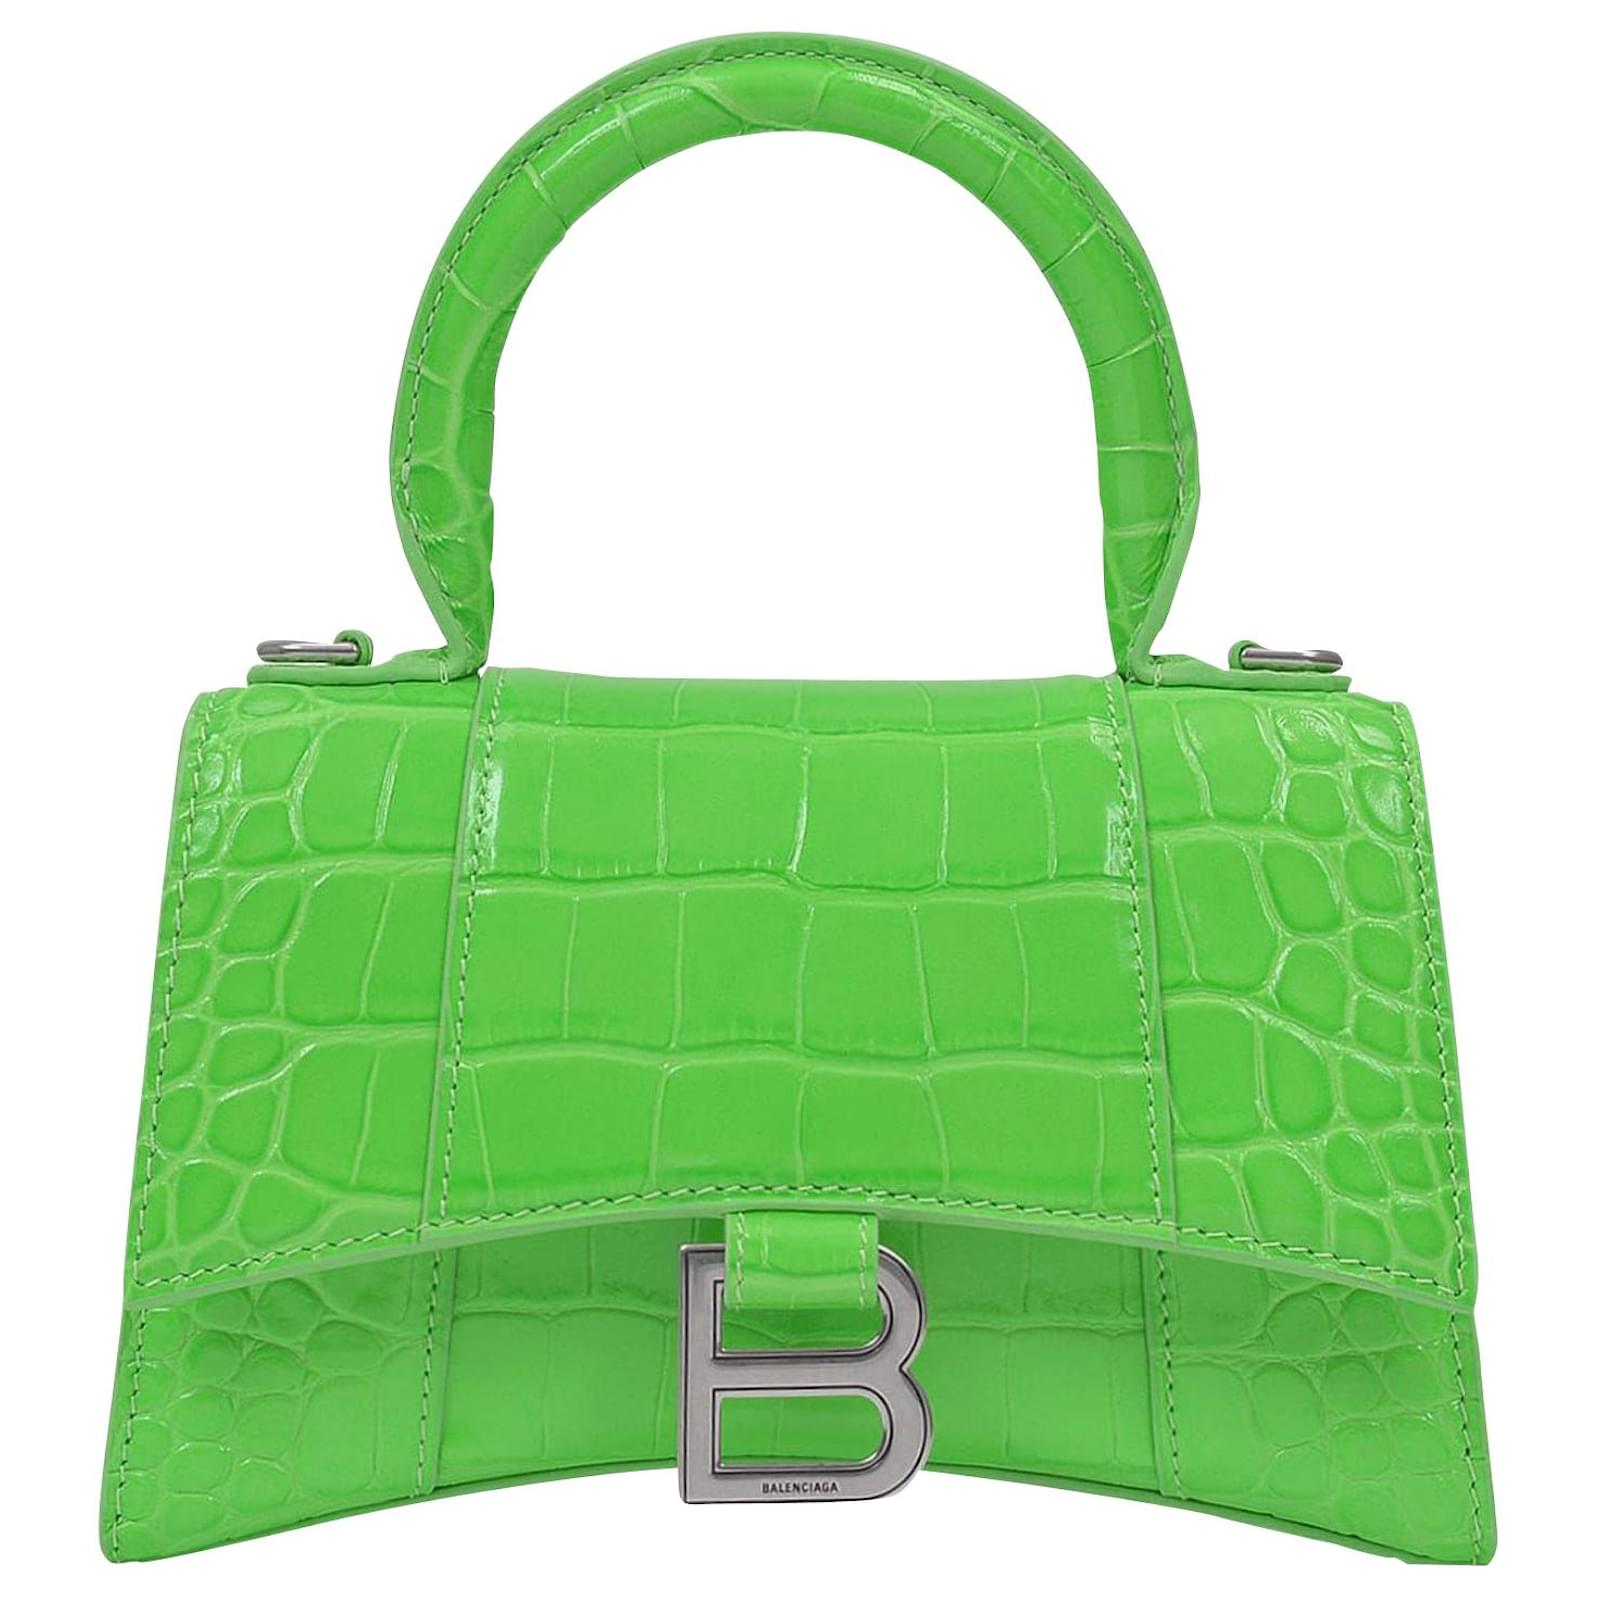 XS Embossed Croc Hourglass Top Handle Bag